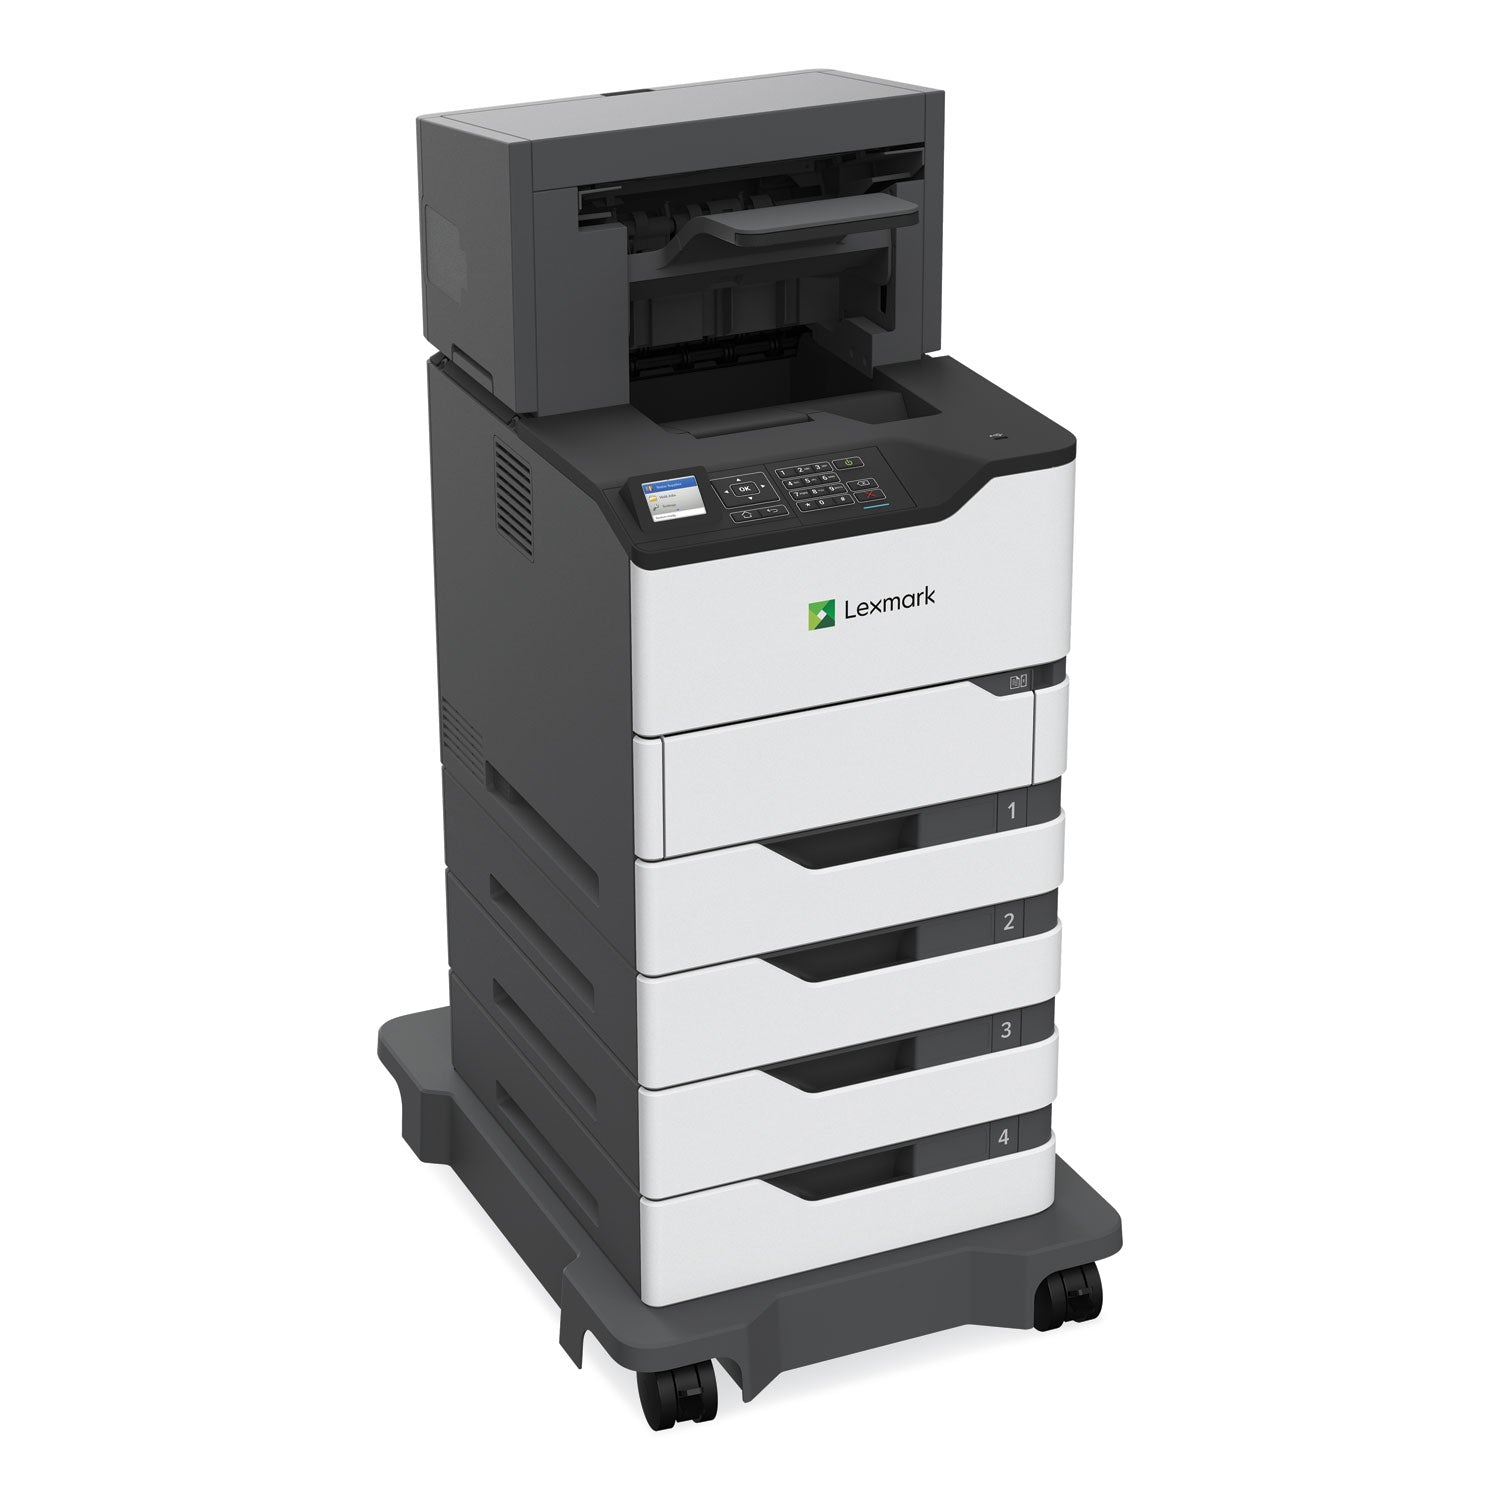 ms821dn-laser-printer_lex50g0100 - 3